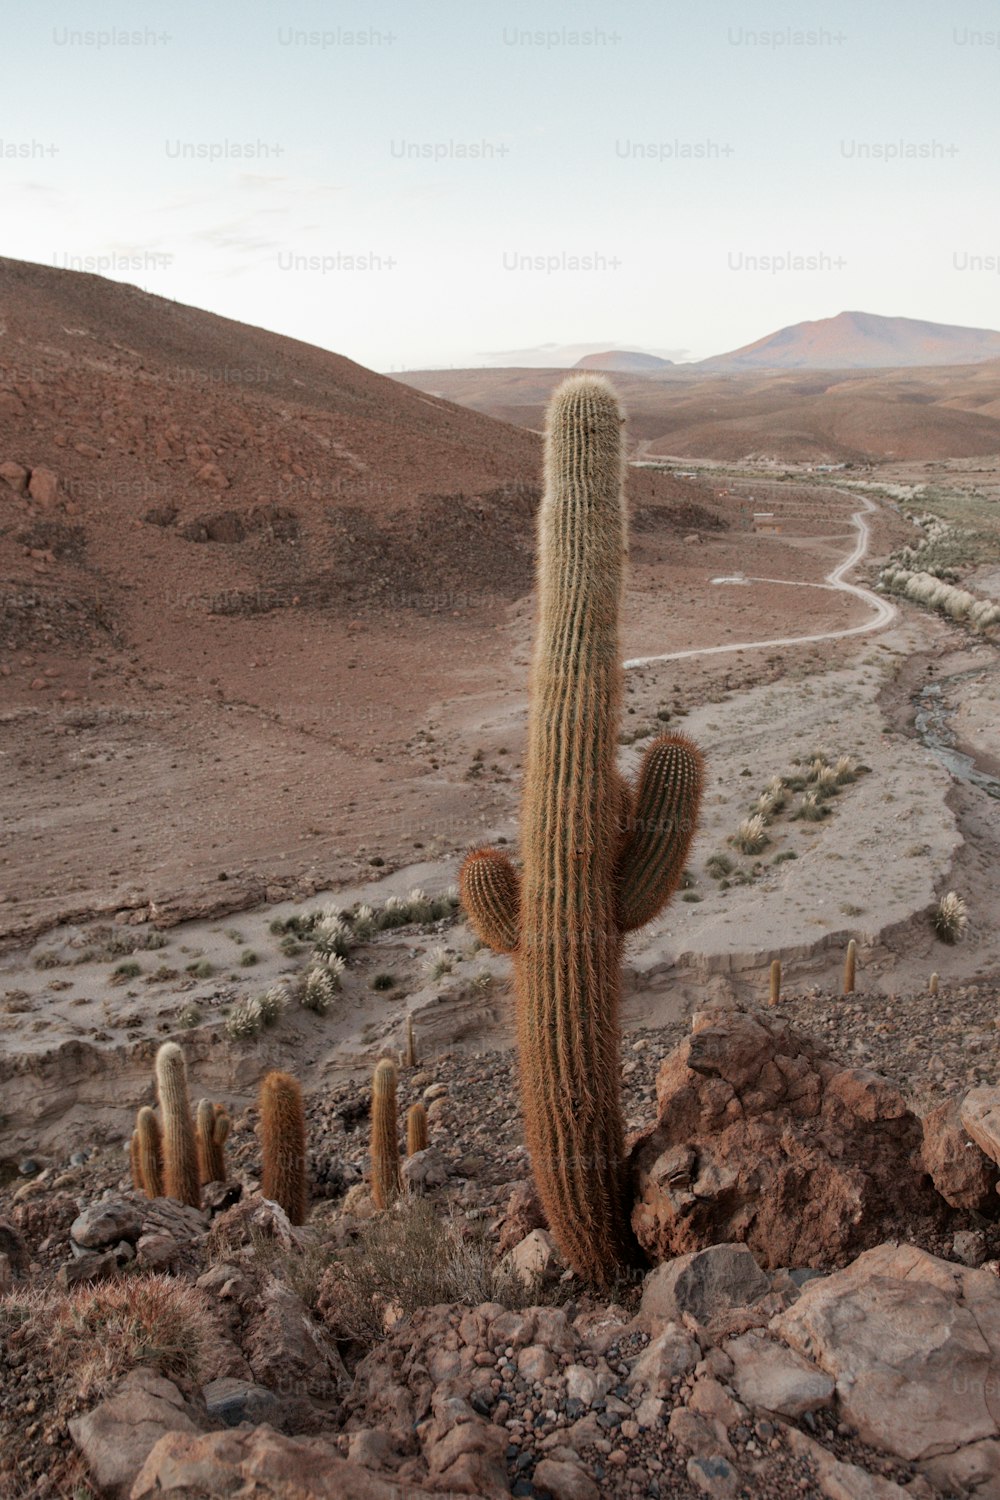 Un grand cactus au milieu d’un désert